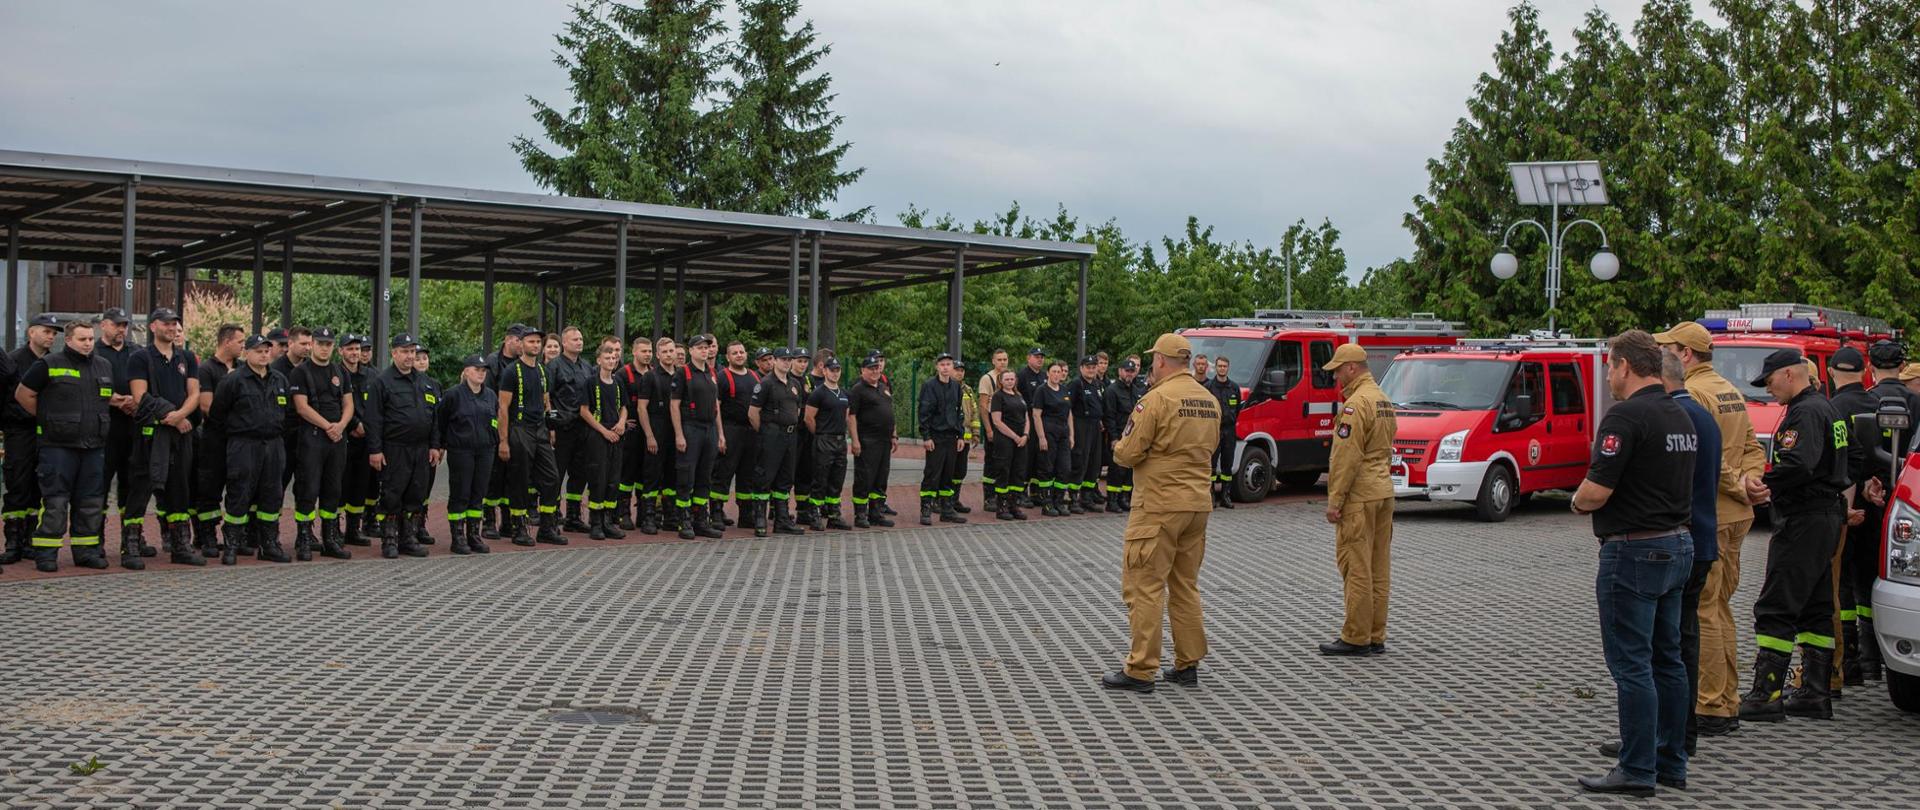 Na zdjęciu widnieją strażacy w trakcie organizowanych manewrów z zakresu ratownictwa medycznego. 